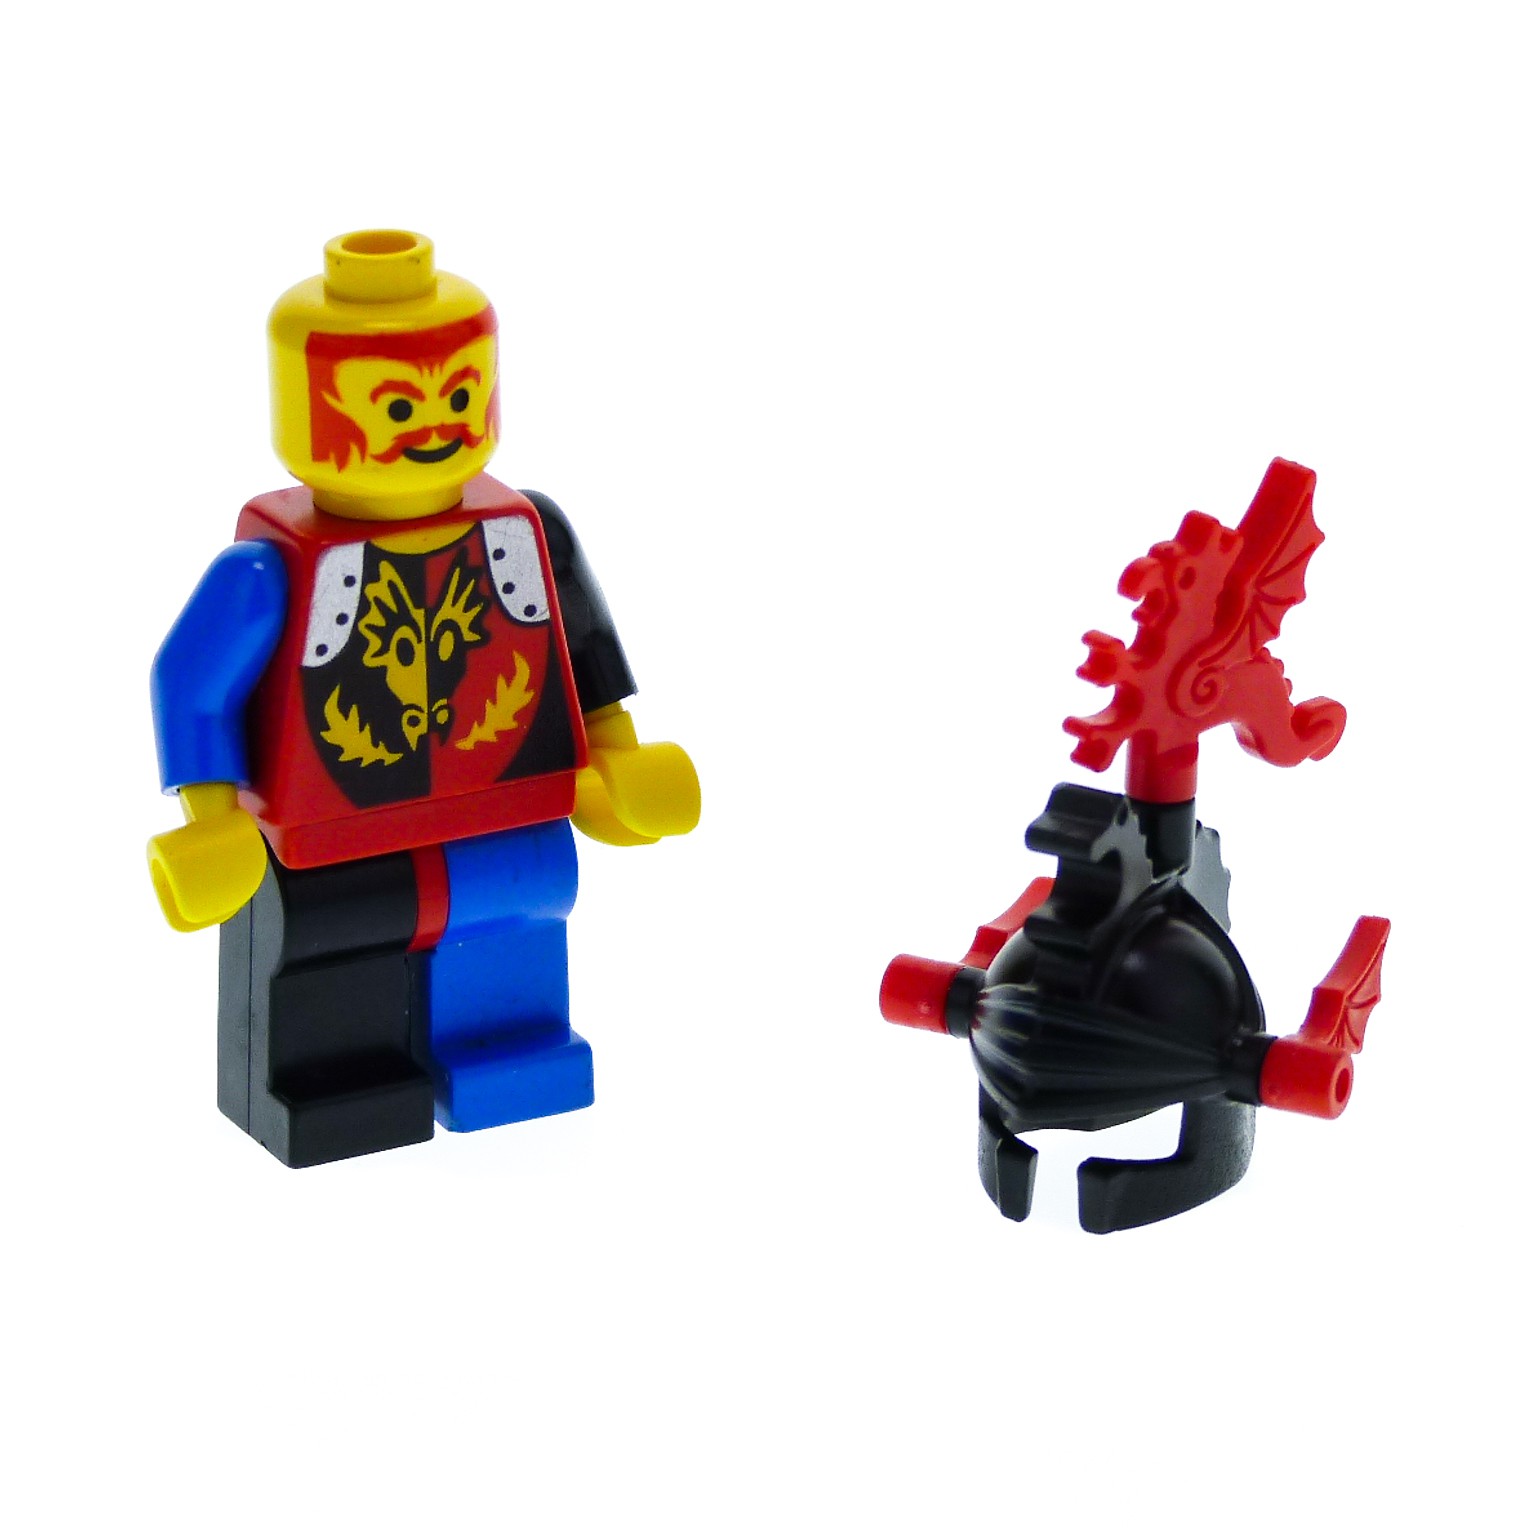 Lego 2 x Arm Greifarm Hand 3613 weiß 30082 alt dunkelgrau 1782 6575 6473 